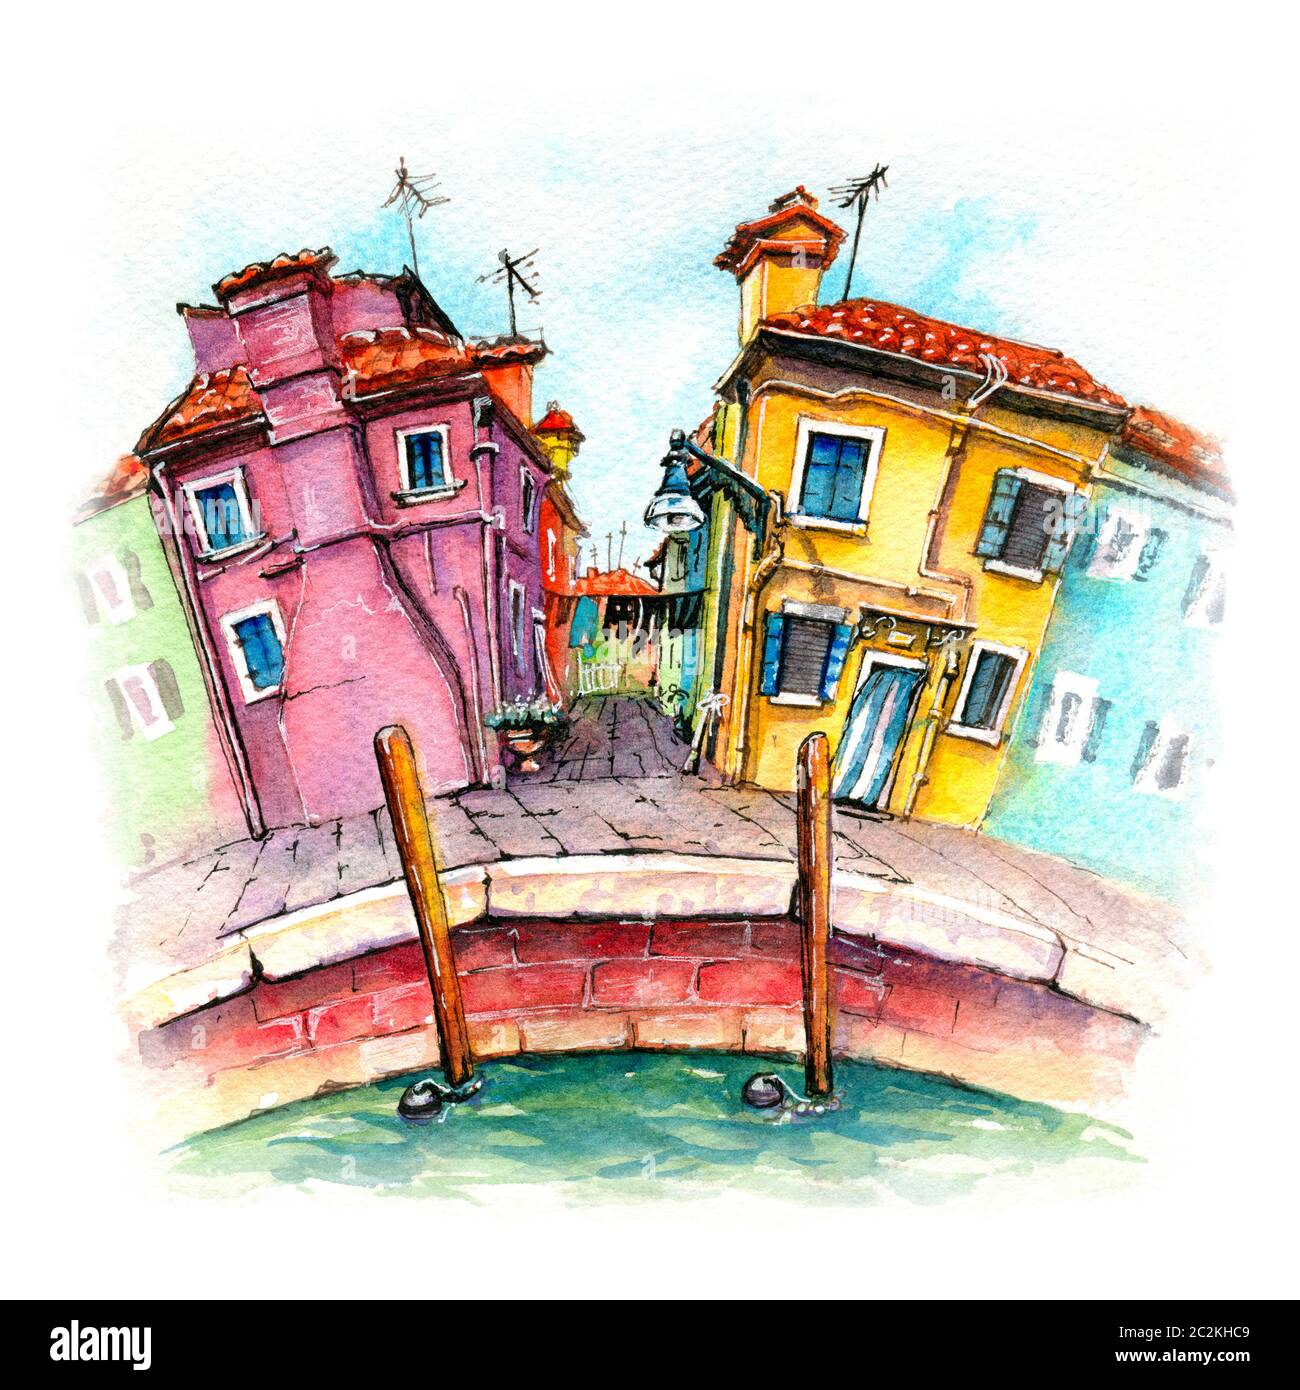 Croquis aquarelle de jolies maisons colorées sur la célèbre île de Burano, Venise, Italie. Marqueurs d'image Banque D'Images